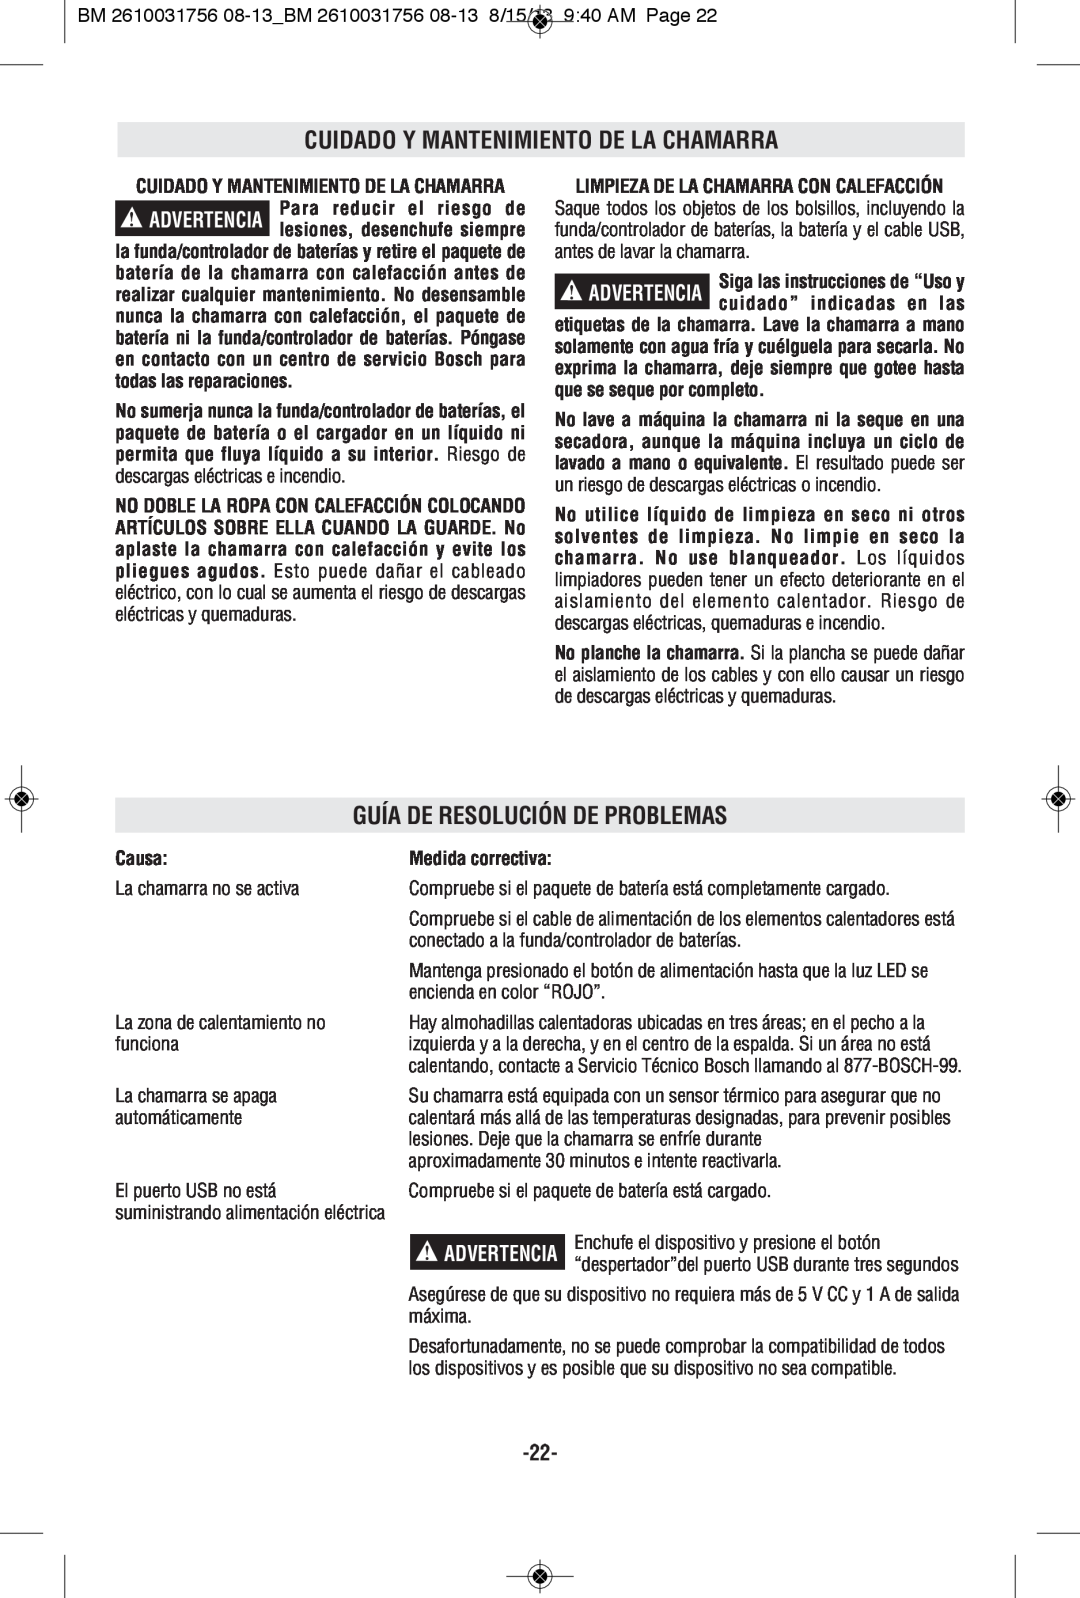 Bosch Appliances PSJ120M-102, PSJ120XXL Cuidado Y Mantenimiento De La Chamarra, Guía De Resolución De Problemas, Causa 